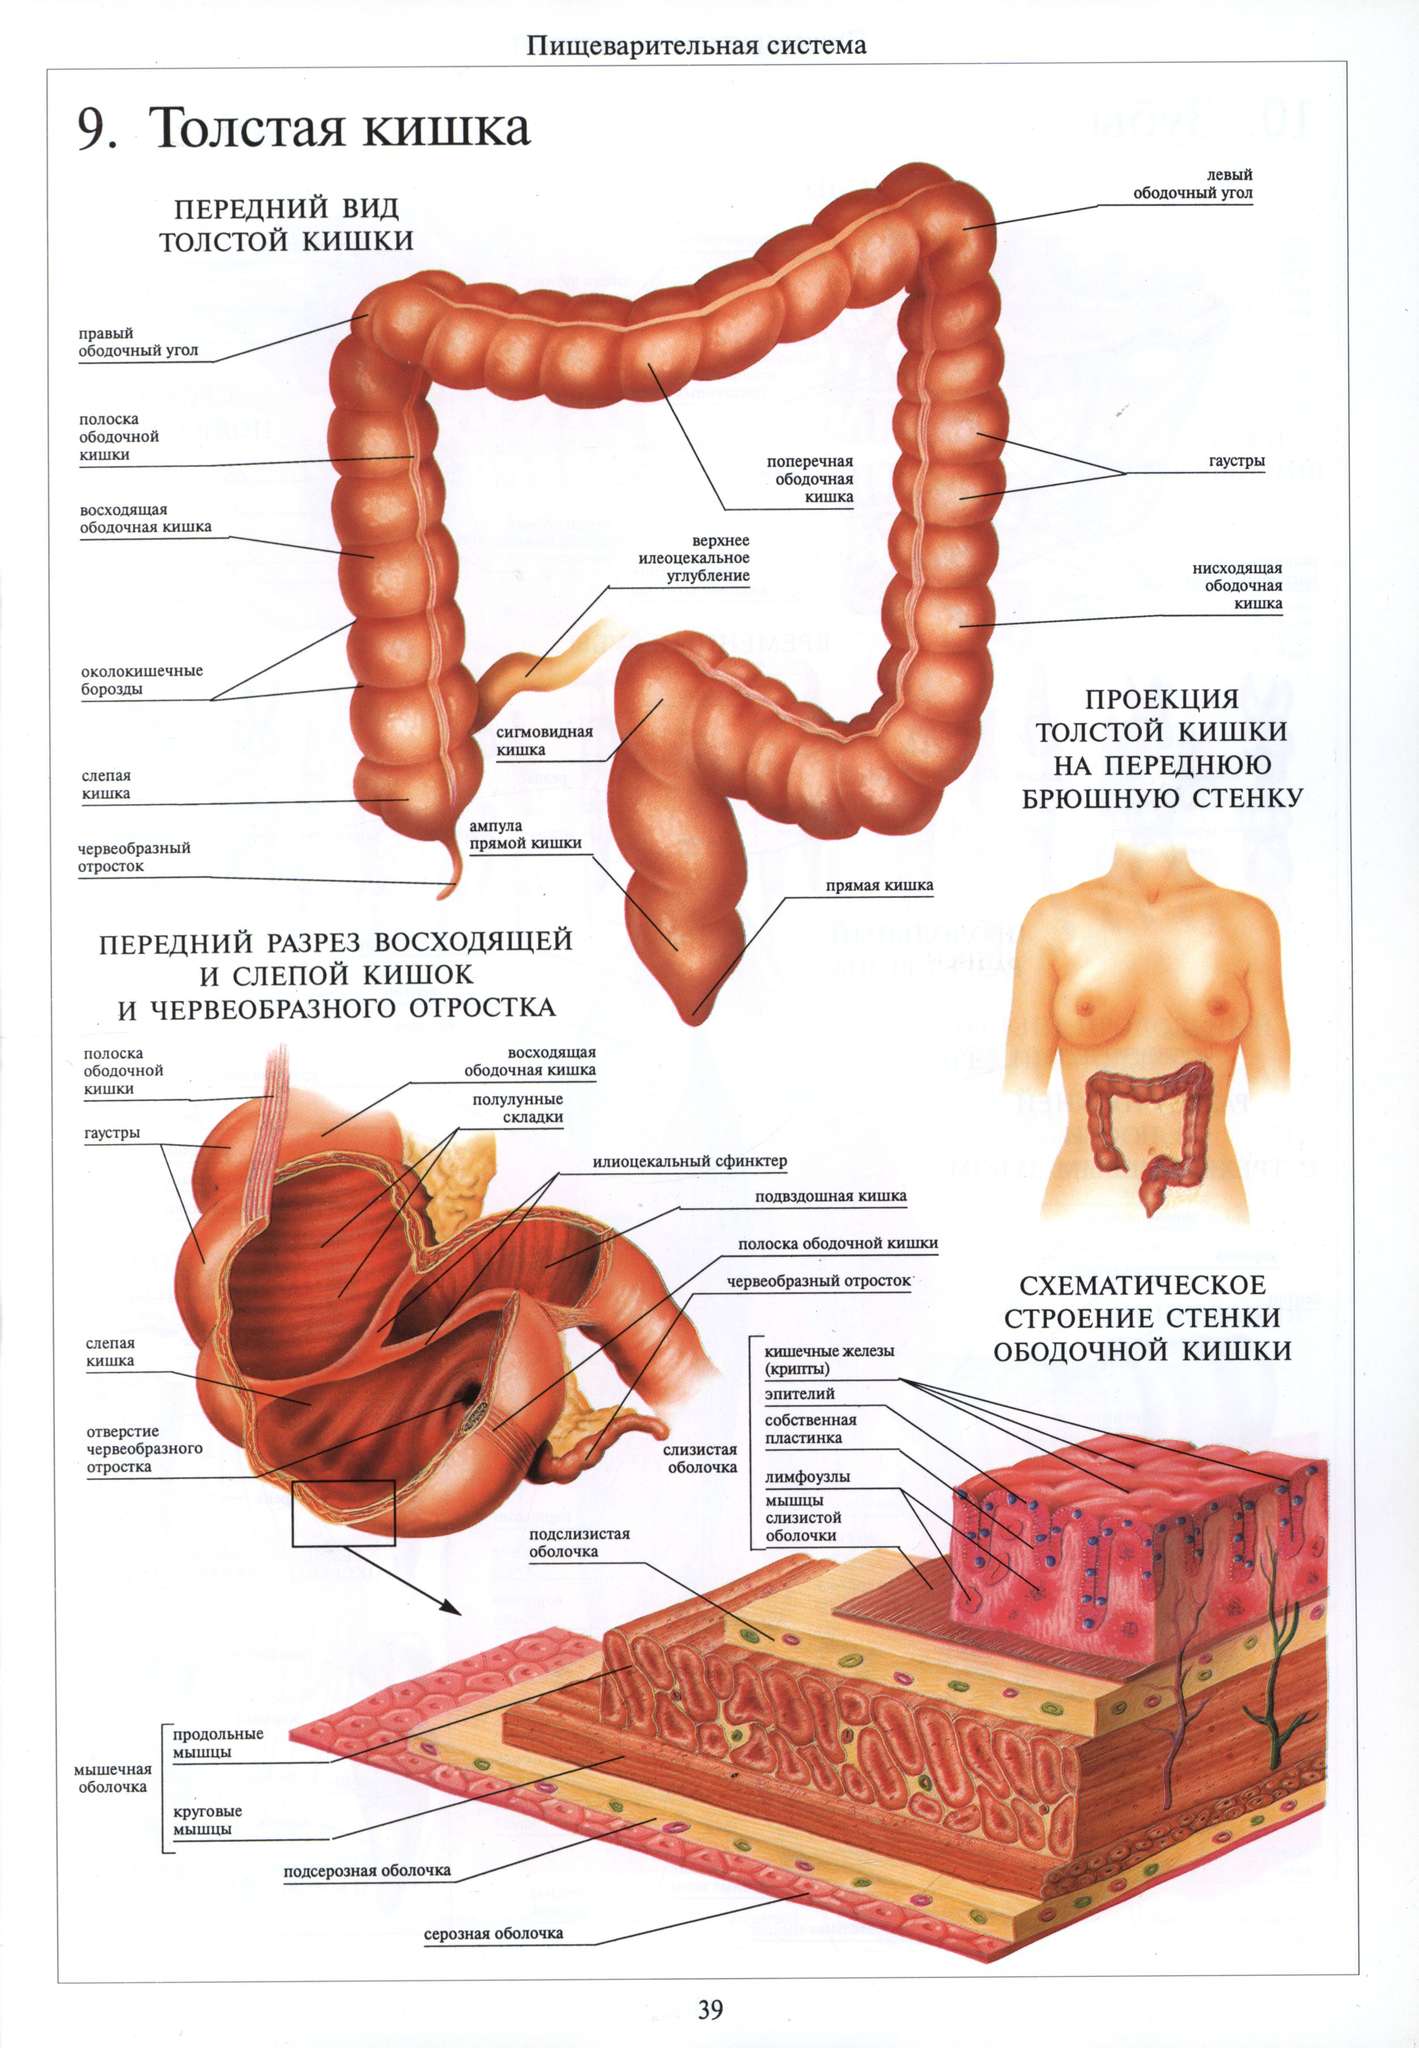 Тонкий и толстый кишечник анатомия строение